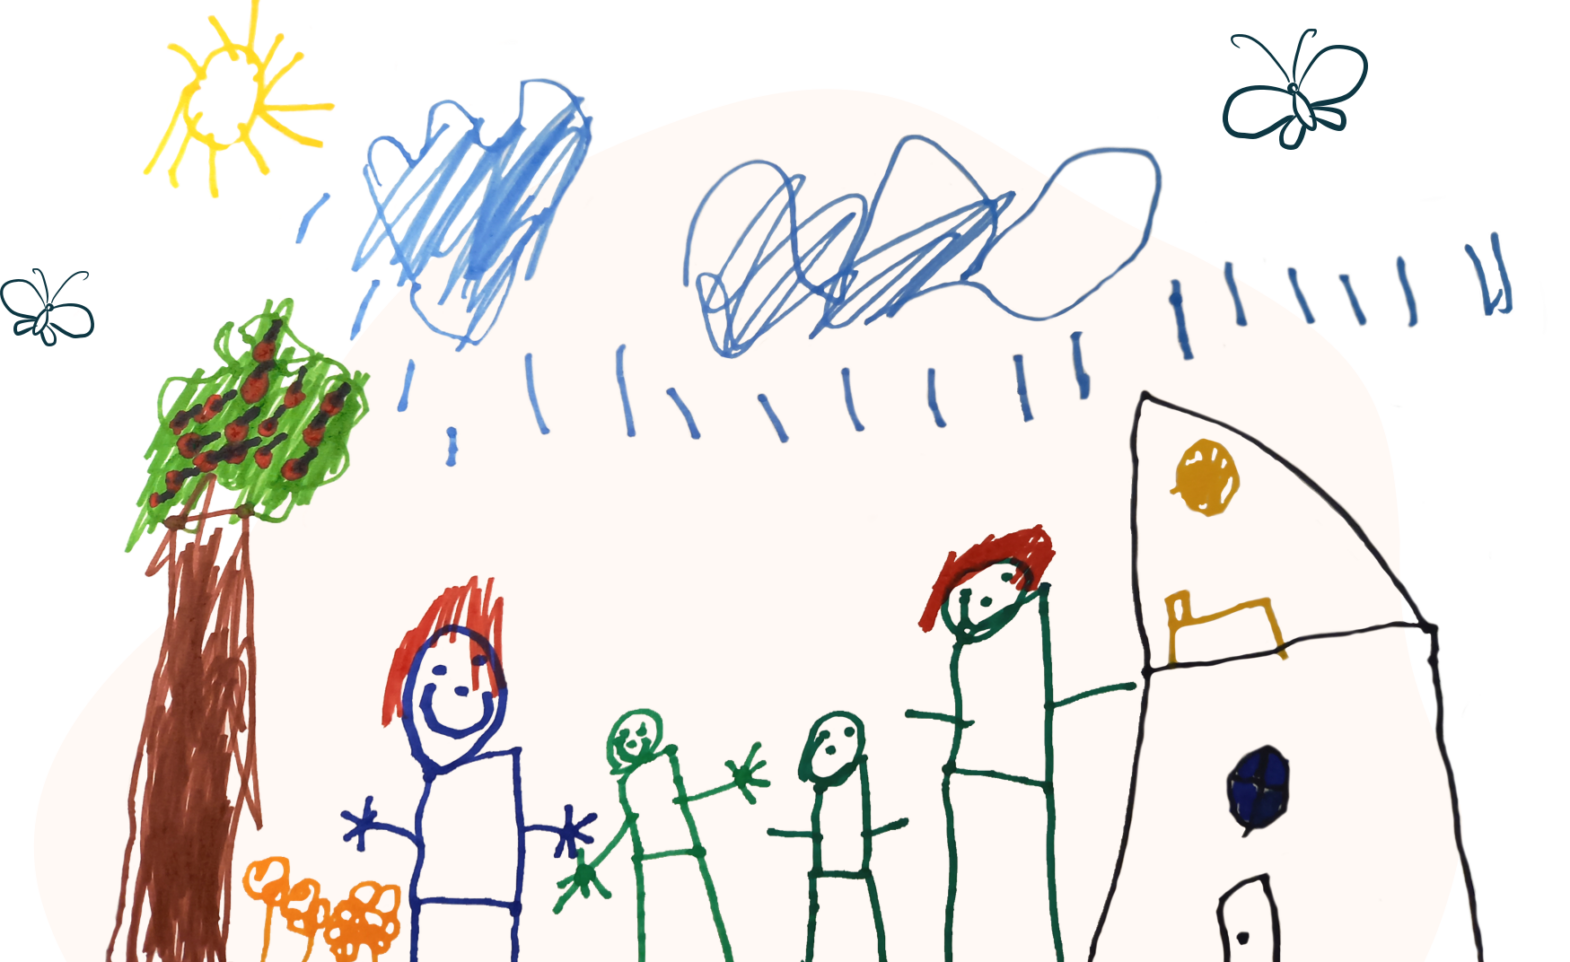 Bērna zīmējums ar četriem cilvēkiem (divi lielāki, divi mazāki), māja, koks, mākoņi, saule un kukaiņi